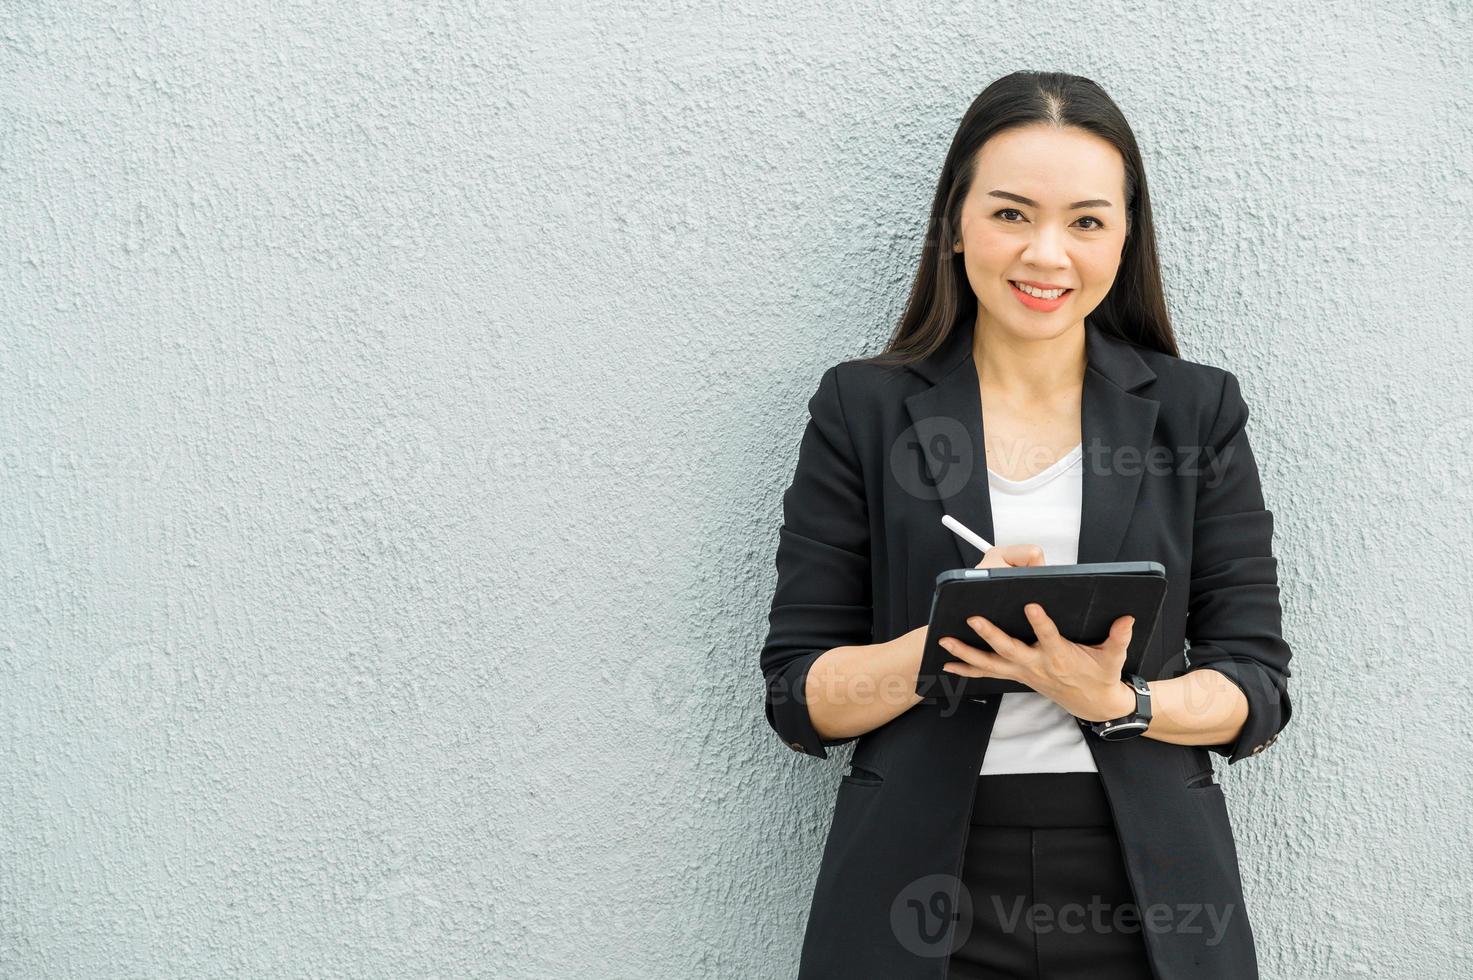 Asiatische berufstätige frau, die tablet im büro hält berufsfrau konzept geschäftsfrau mit technologie foto